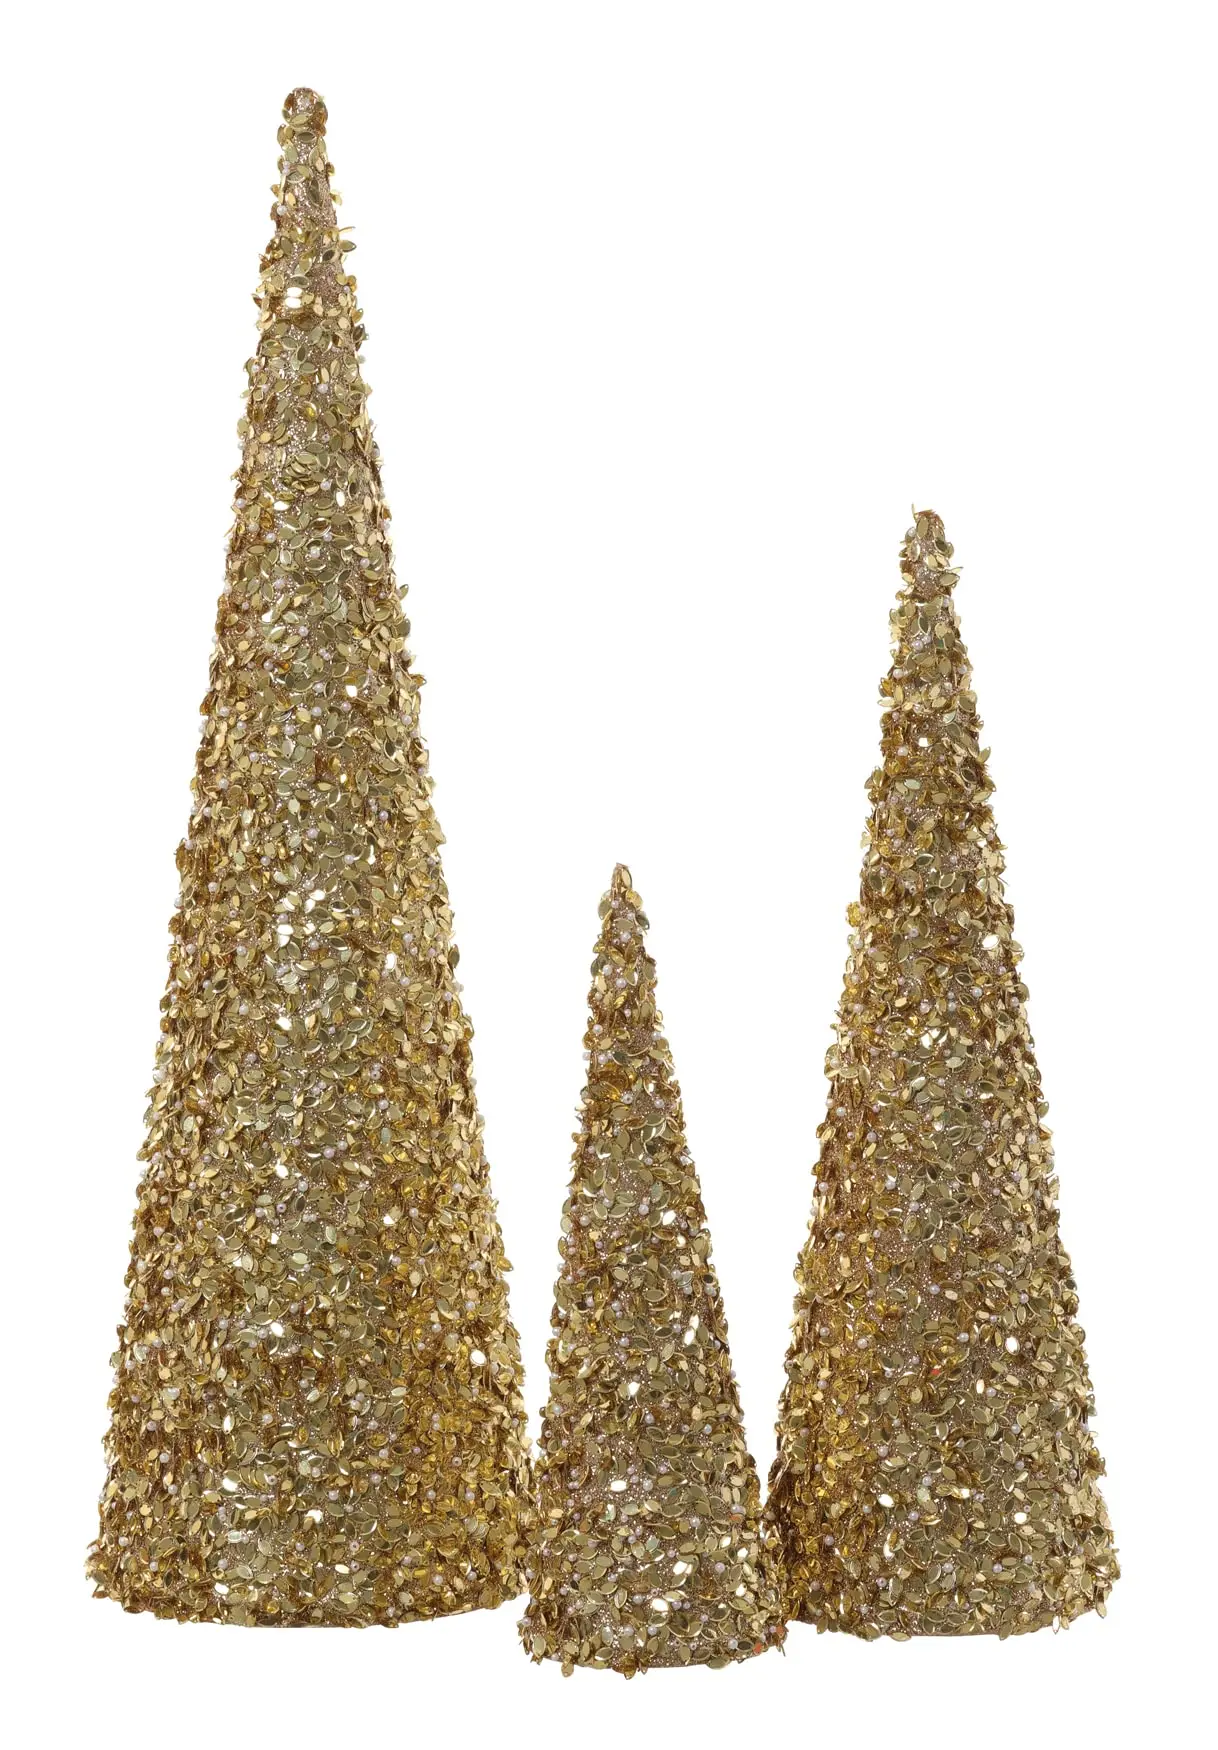 arboles de navidad de plastico y brillantina - Cómo dar brillo al árbol de Navidad